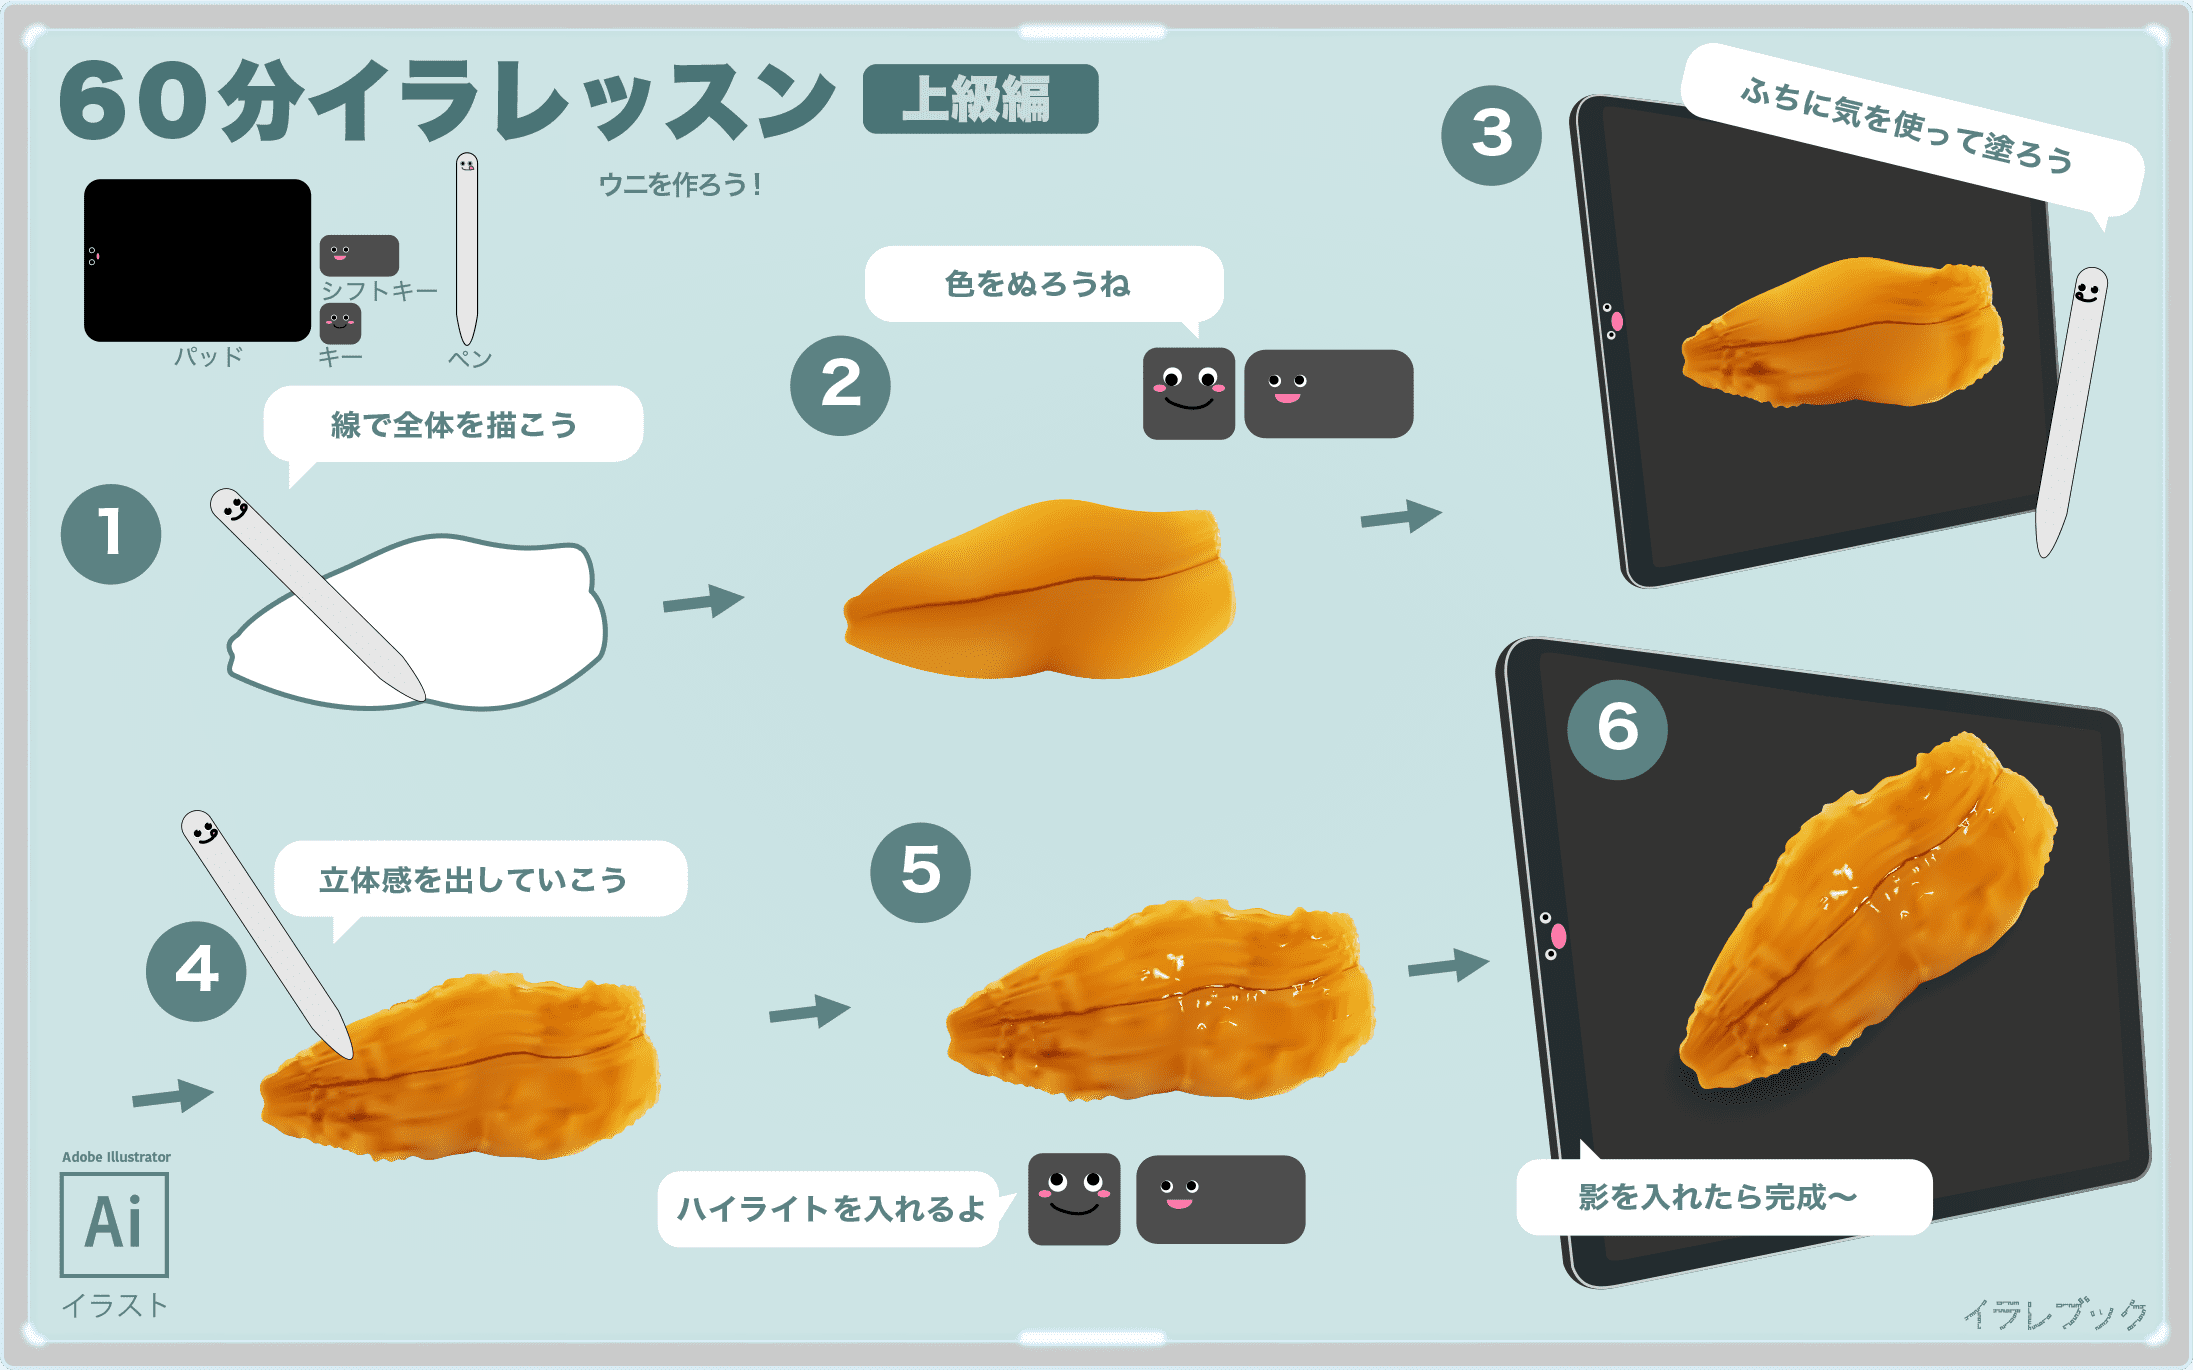 ウニのイラスト 雲丹の詳細と歴史や美味しい食べ方 栄養をイラストで図解 イラレマンガつき Seaurchin